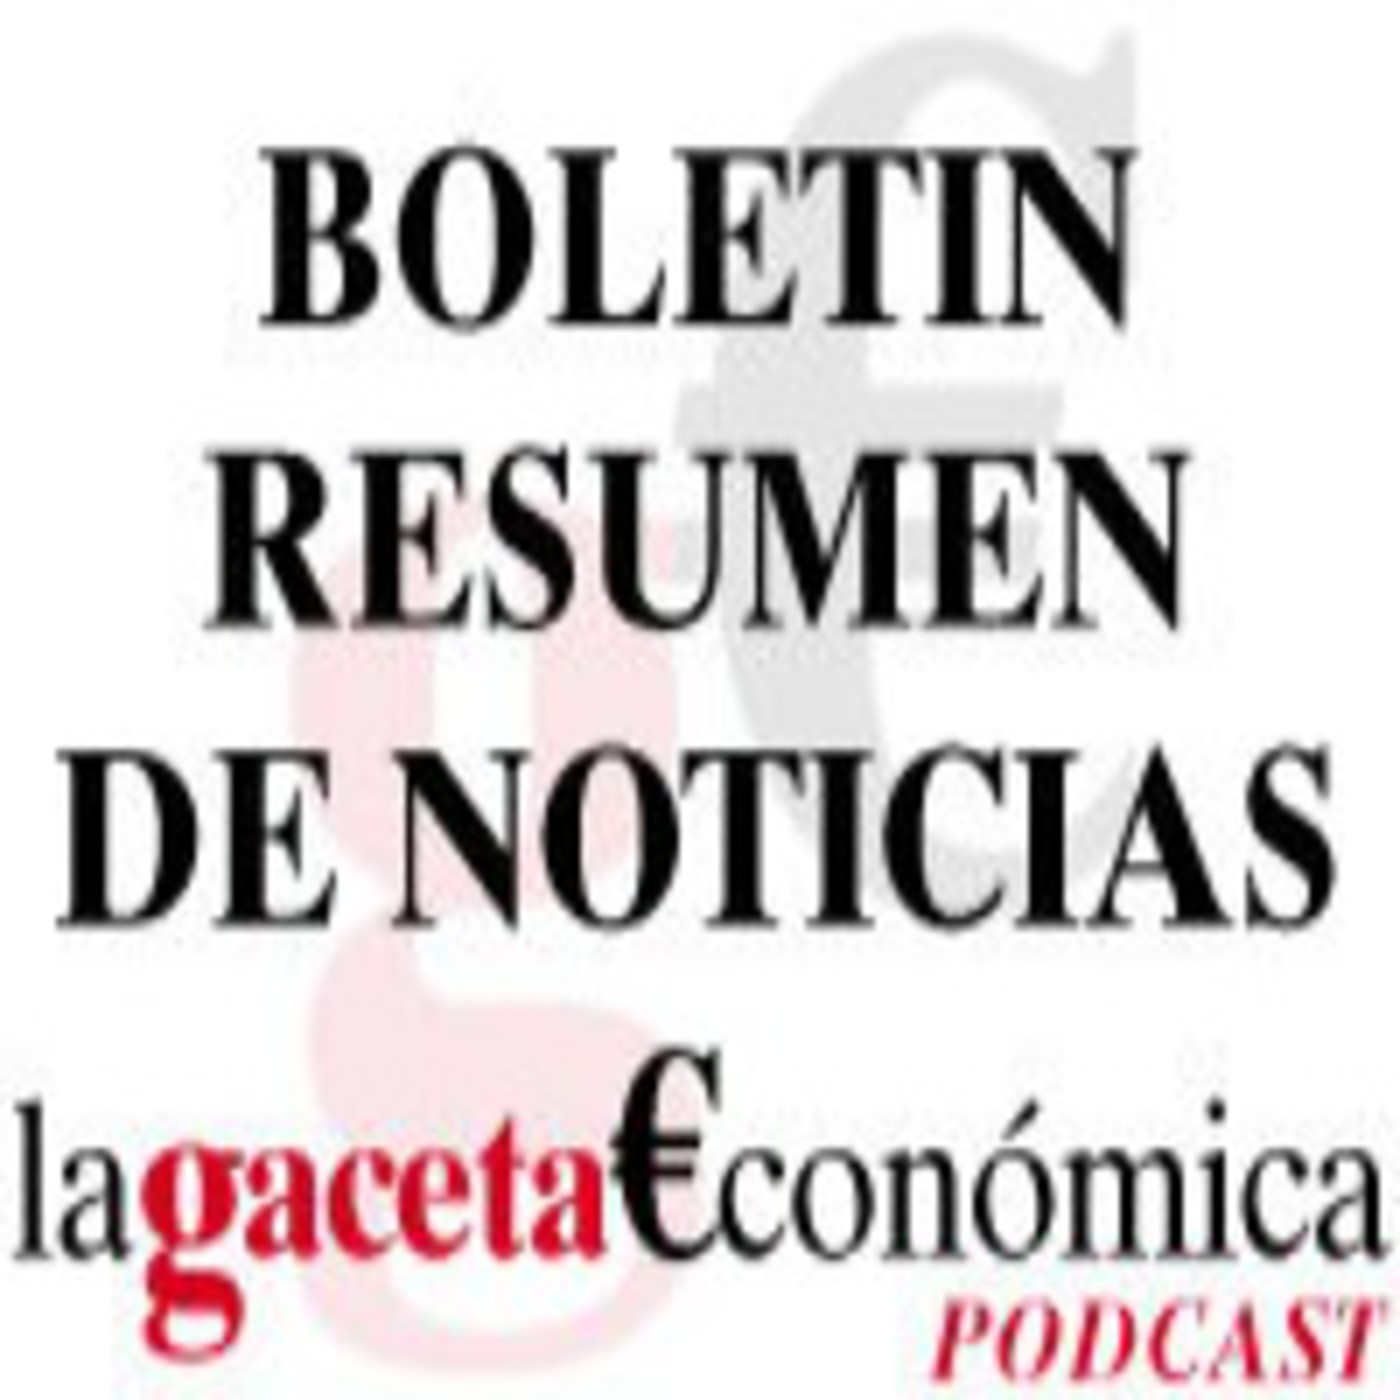 Resumen de Noticias 11-03-2011 La Gaceta Económica de Almería